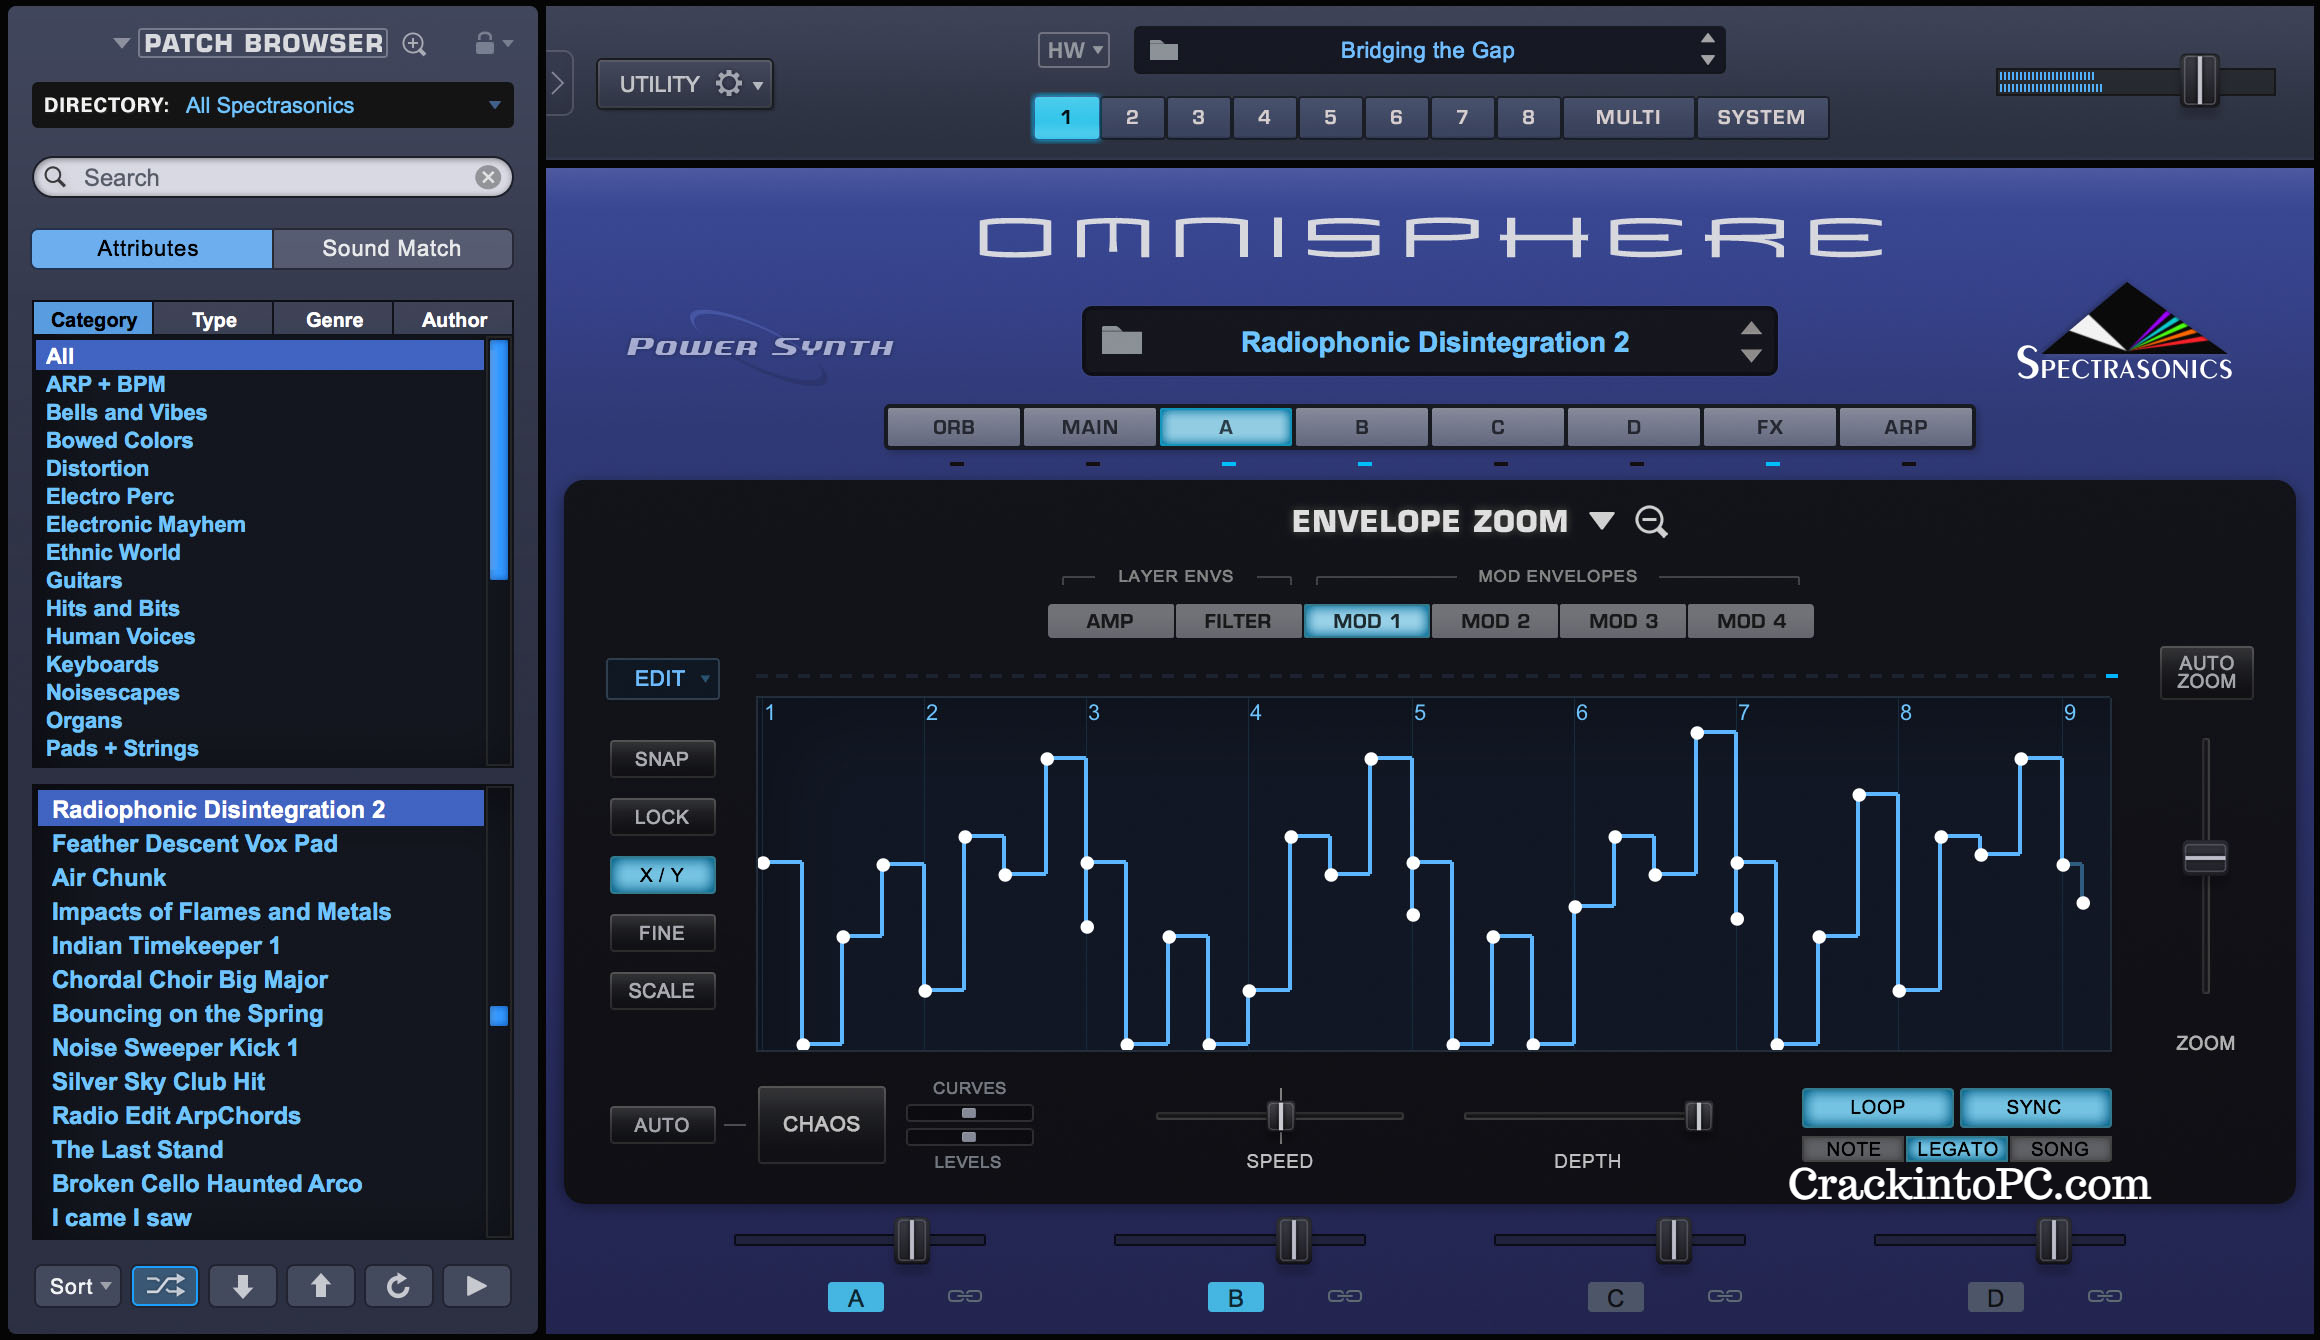 Omnisphere 2.8 Crack With Keygen (100% Working) Download 2022